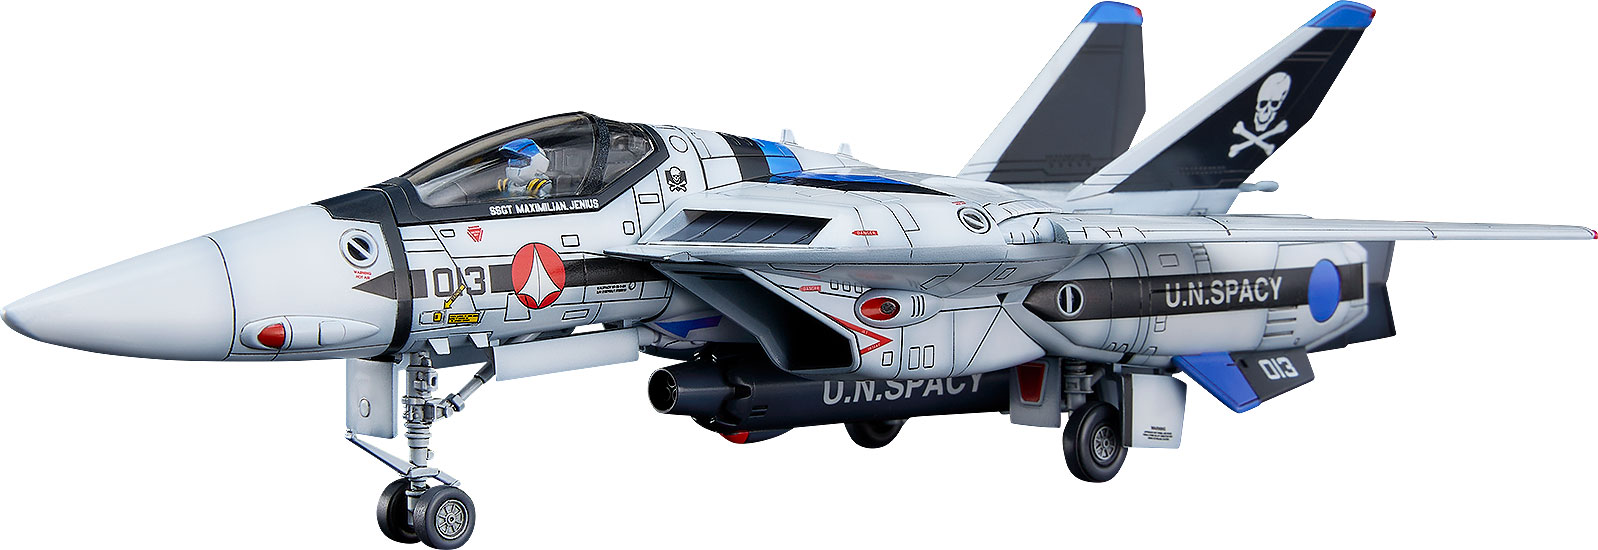 PLAMAX 1/72 VF-1バルキリー、マックス機と柿崎機がコンパチブルキットで登場！
映画『超時空要塞マクロス 愛・おぼえていますか』にて活躍する「VF-1バルキリー」を1/72スケールでキット化。マーキングは柿崎速雄機とマクシミリアン・ジーナス機をチョイス、マックス機はA型の013と隊長機S型の001を選んで作ることができます。
キット解説：パーツ数を抑えながらもディテール表現は抑揚と密度感を兼ね備えたものになっているため、何度も組み立てたくなるようなスピード感でバルキリーの魅力がギュッと詰まった完成品が手に入ります。パーツ同士の合わせ目は極力目立たない部分に設定し、各ユニットがガッチリと所定の位置に収まるようのりしろ部分をしっかり取ったことで、パーツ同士の位置や角度がしっかりと決まり、完成後の剛性感もきわめて高いモデルになっています。バブルキャノピーを再現しながらもパーティングラインの入らない金型設計、開閉各状態を差し替えで表現できる脚収納庫の構成など飛行機模型のプラスチックキットとしても見どころは満点。頭部はA型とS型のものが付属し、1/72ながら高解像度な着座姿勢のパイロットが付属します。各パーツは4色の成型色となっており、組み立ててステッカーやデカールを貼るだけでも実感のある仕上がりとなります。

【素材】プラスチック
【サイズ】全長約190mm
【付属品】専用台座

※掲載の写真は実際の商品とは多少異なる場合があります。

（C） 1984 BIGWEST【対象年齢】：15歳以上【商品サイズ (cm)】(幅）：19